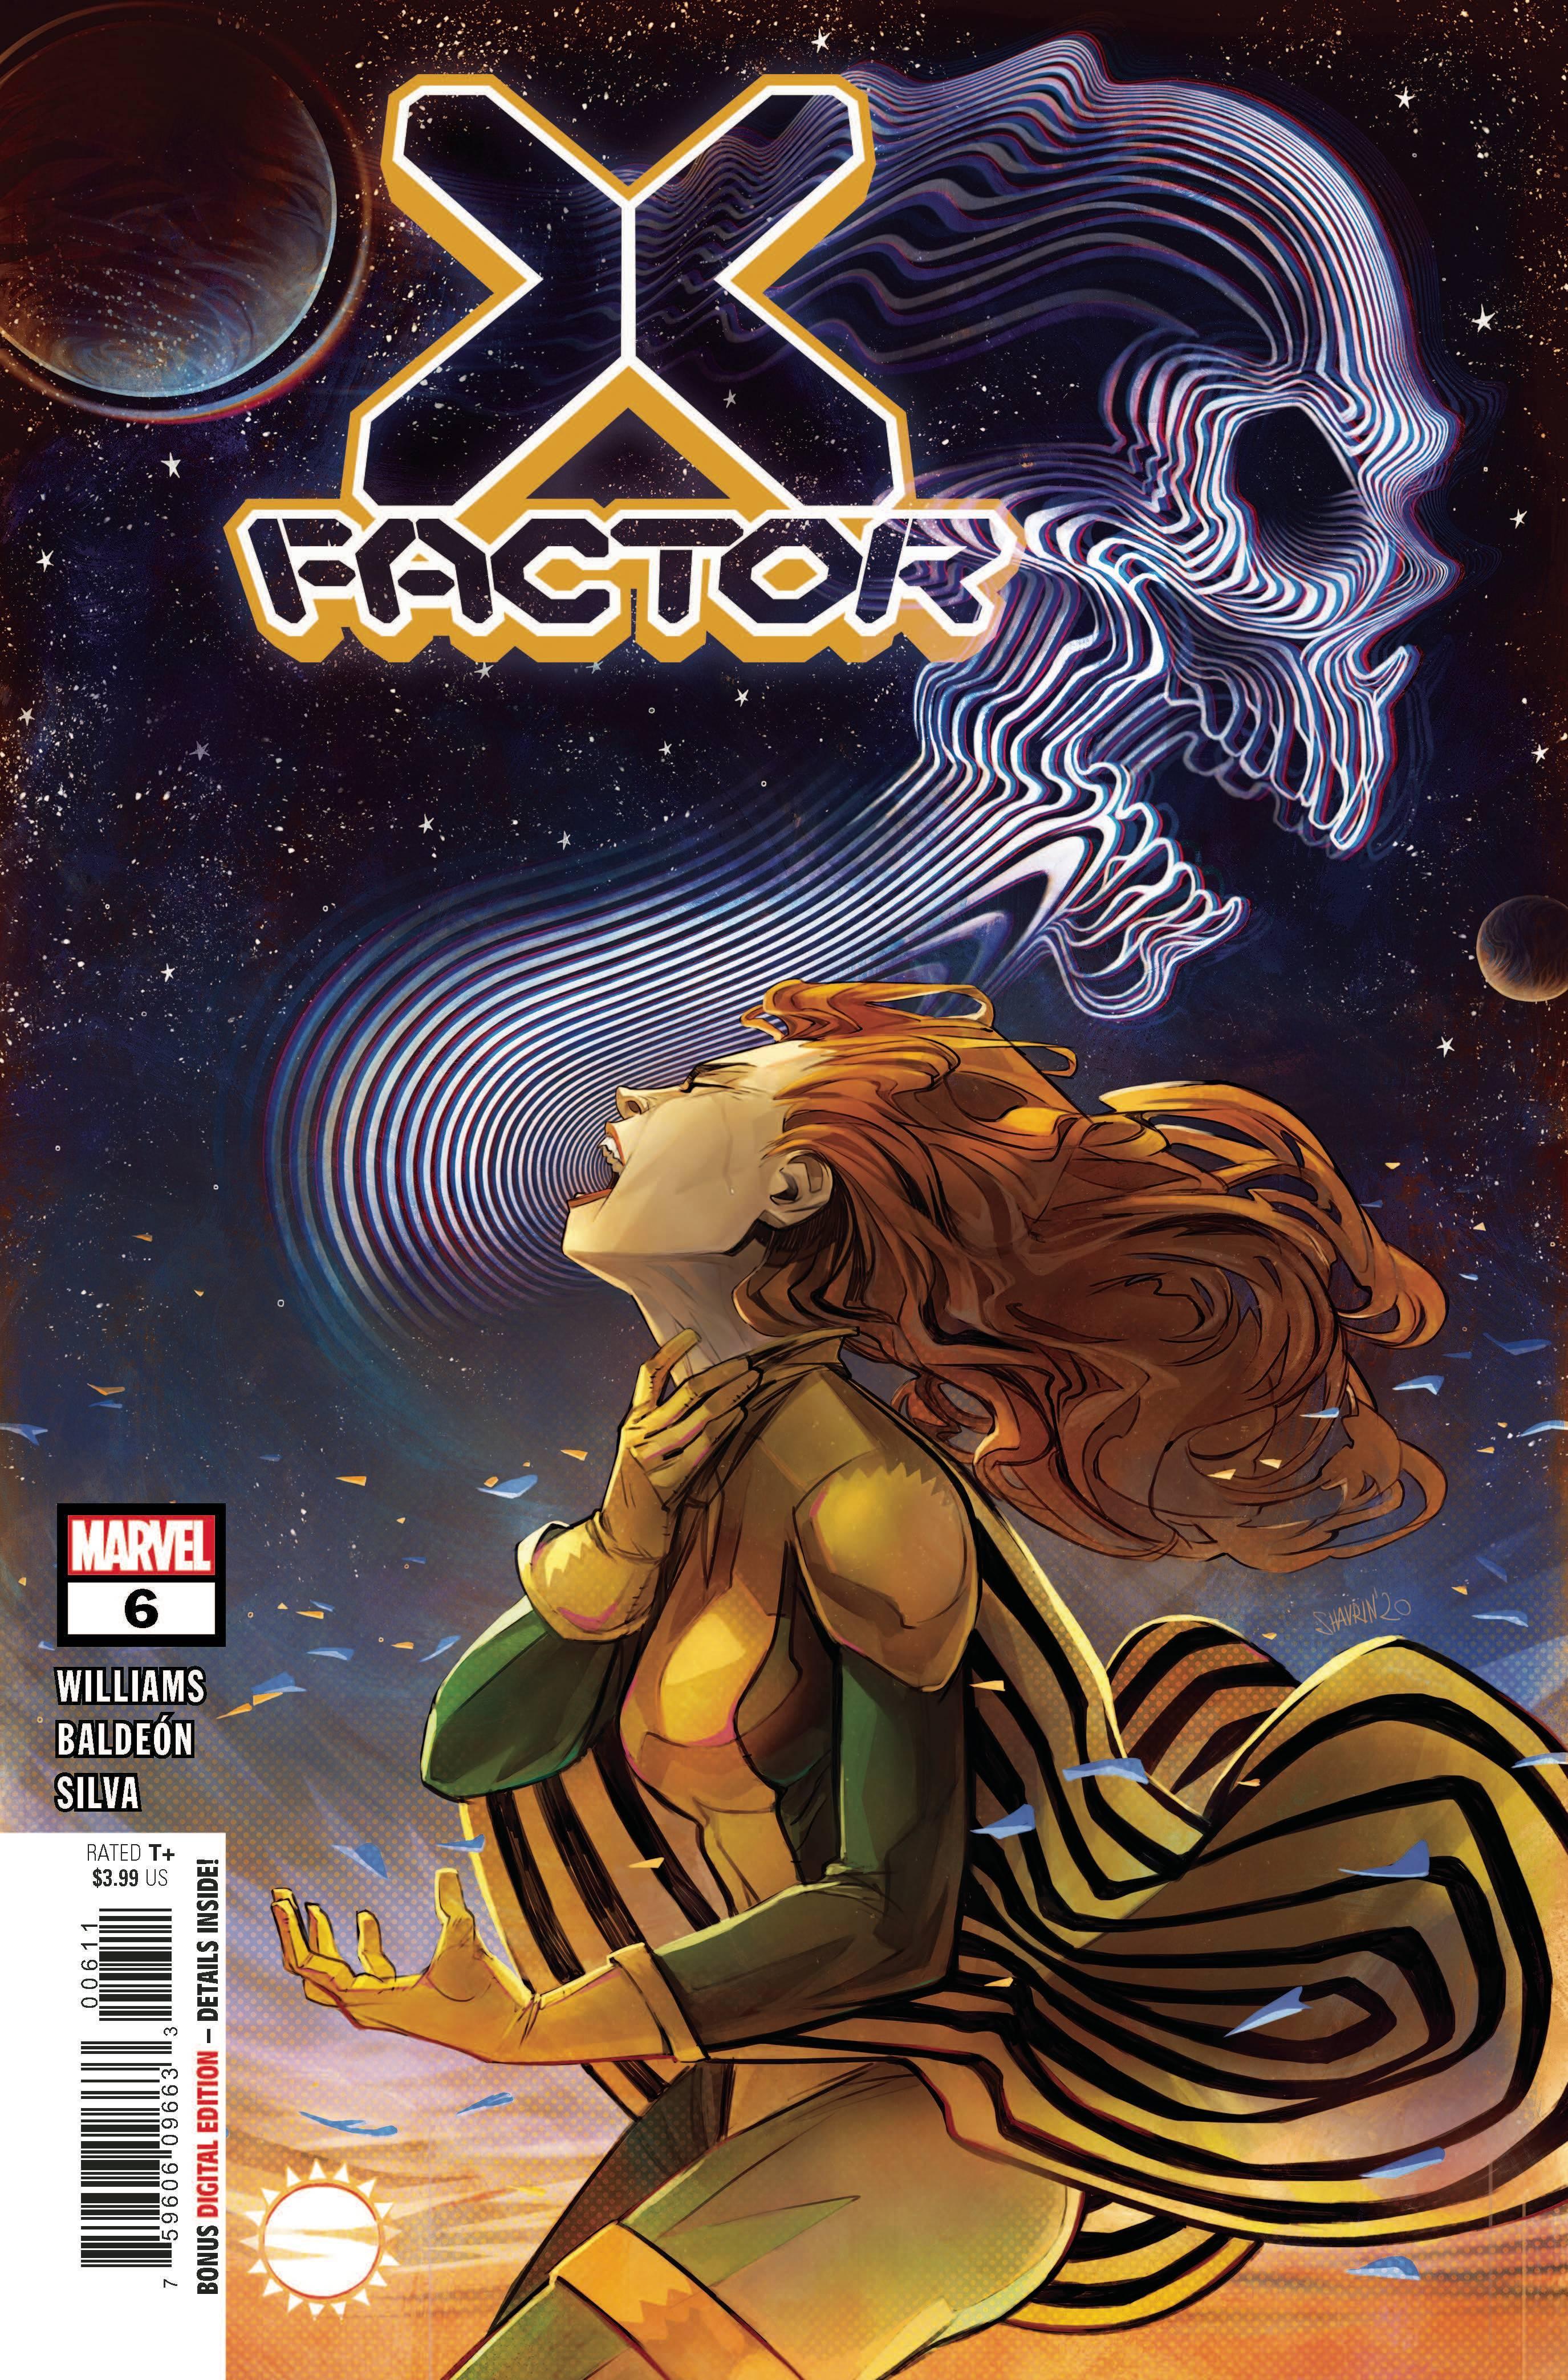 X-FACTOR VOL 4 #6 - Kings Comics